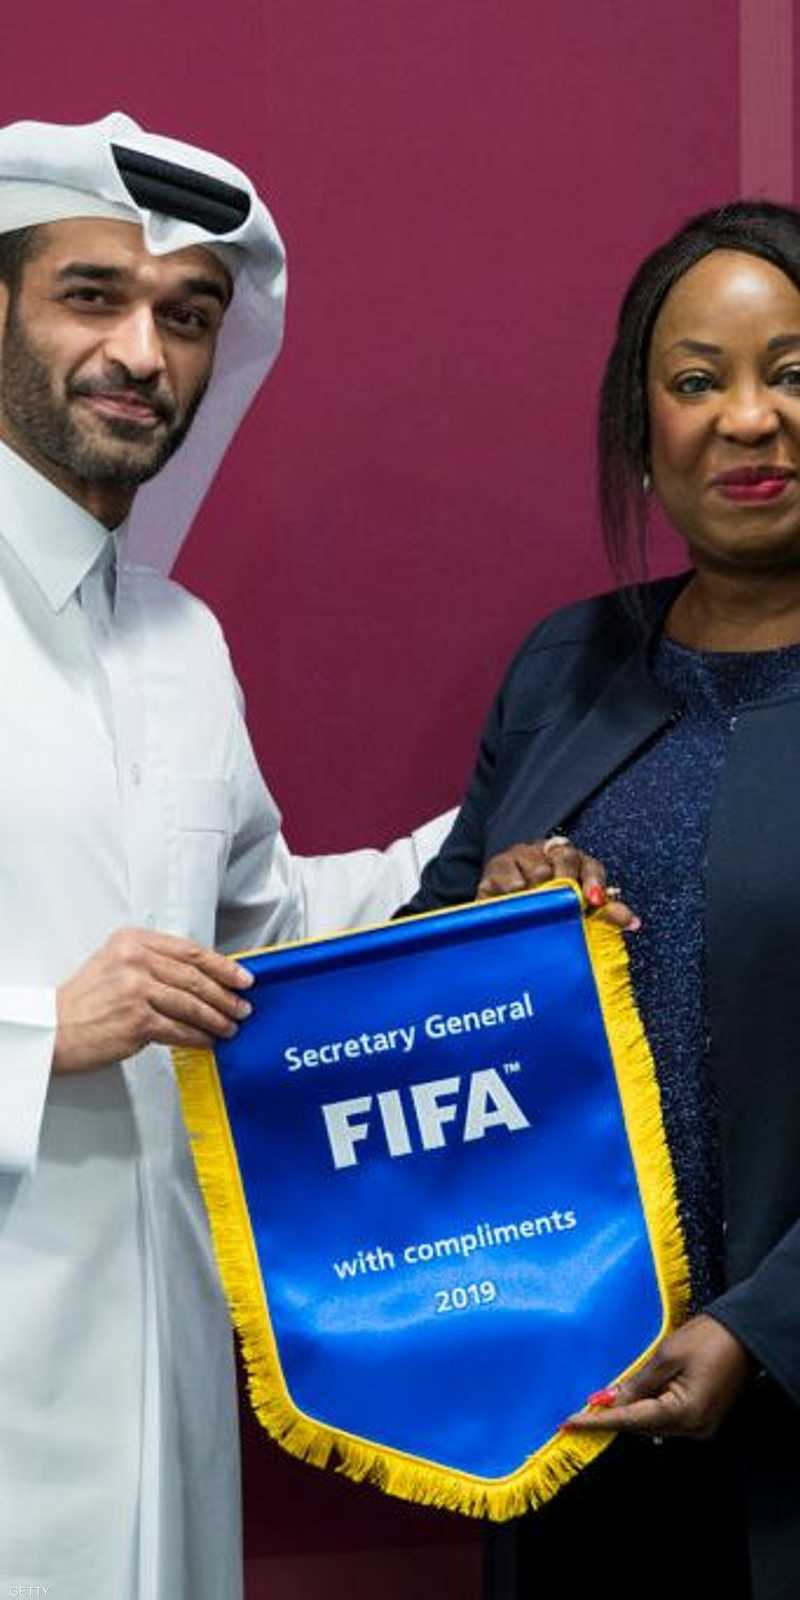 وثائق تكشف اختراق قطر لشخصيات بارزة ولاعبين بمنتخب مصر 1-1226803.jpg